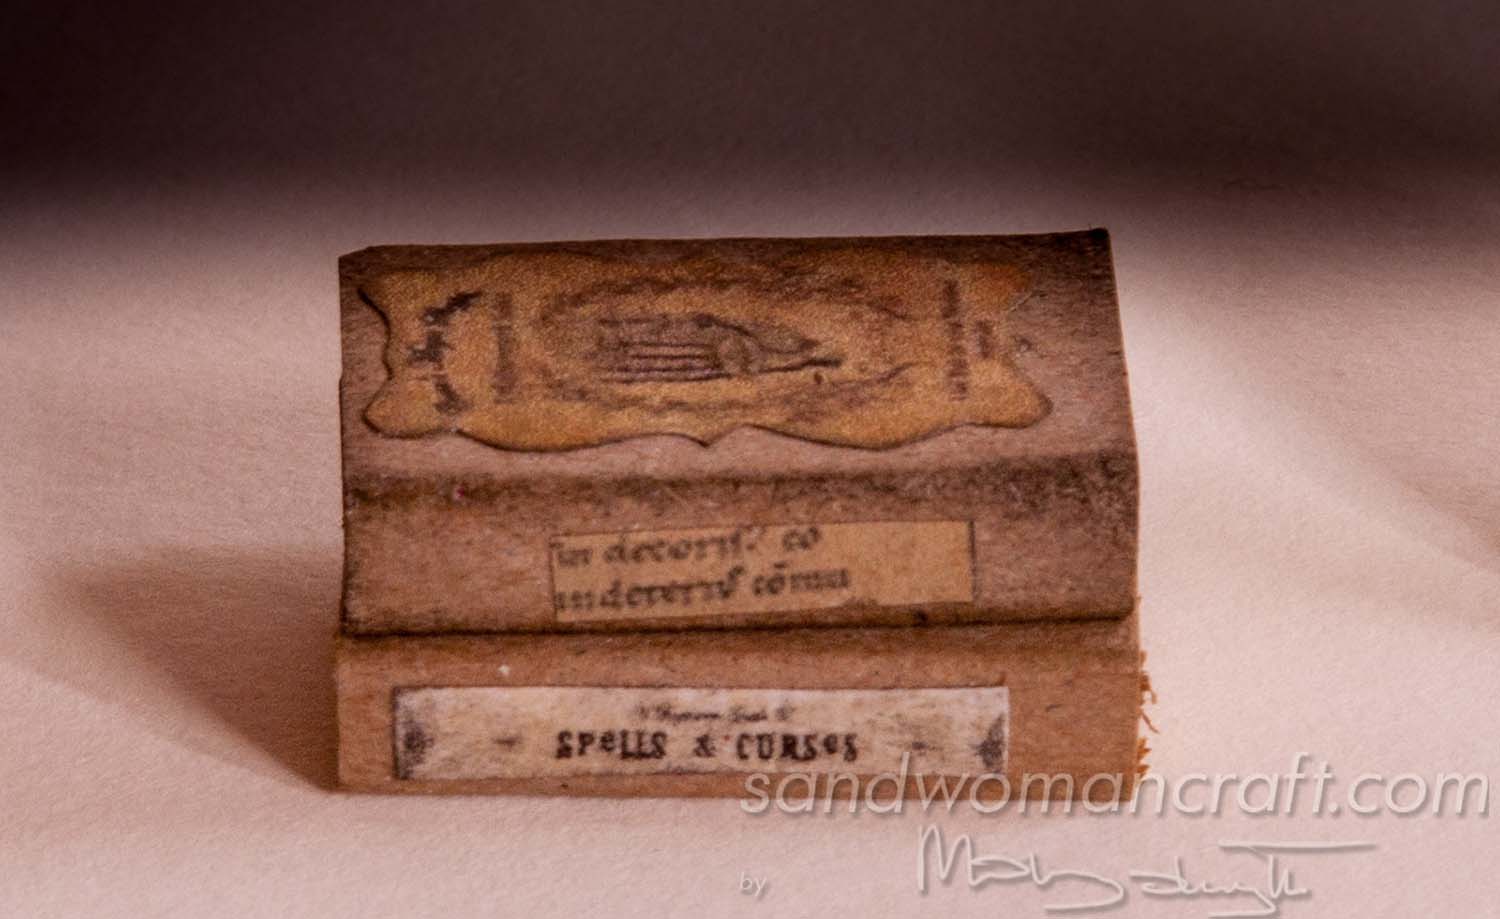 Miniature book "Spells and curses"